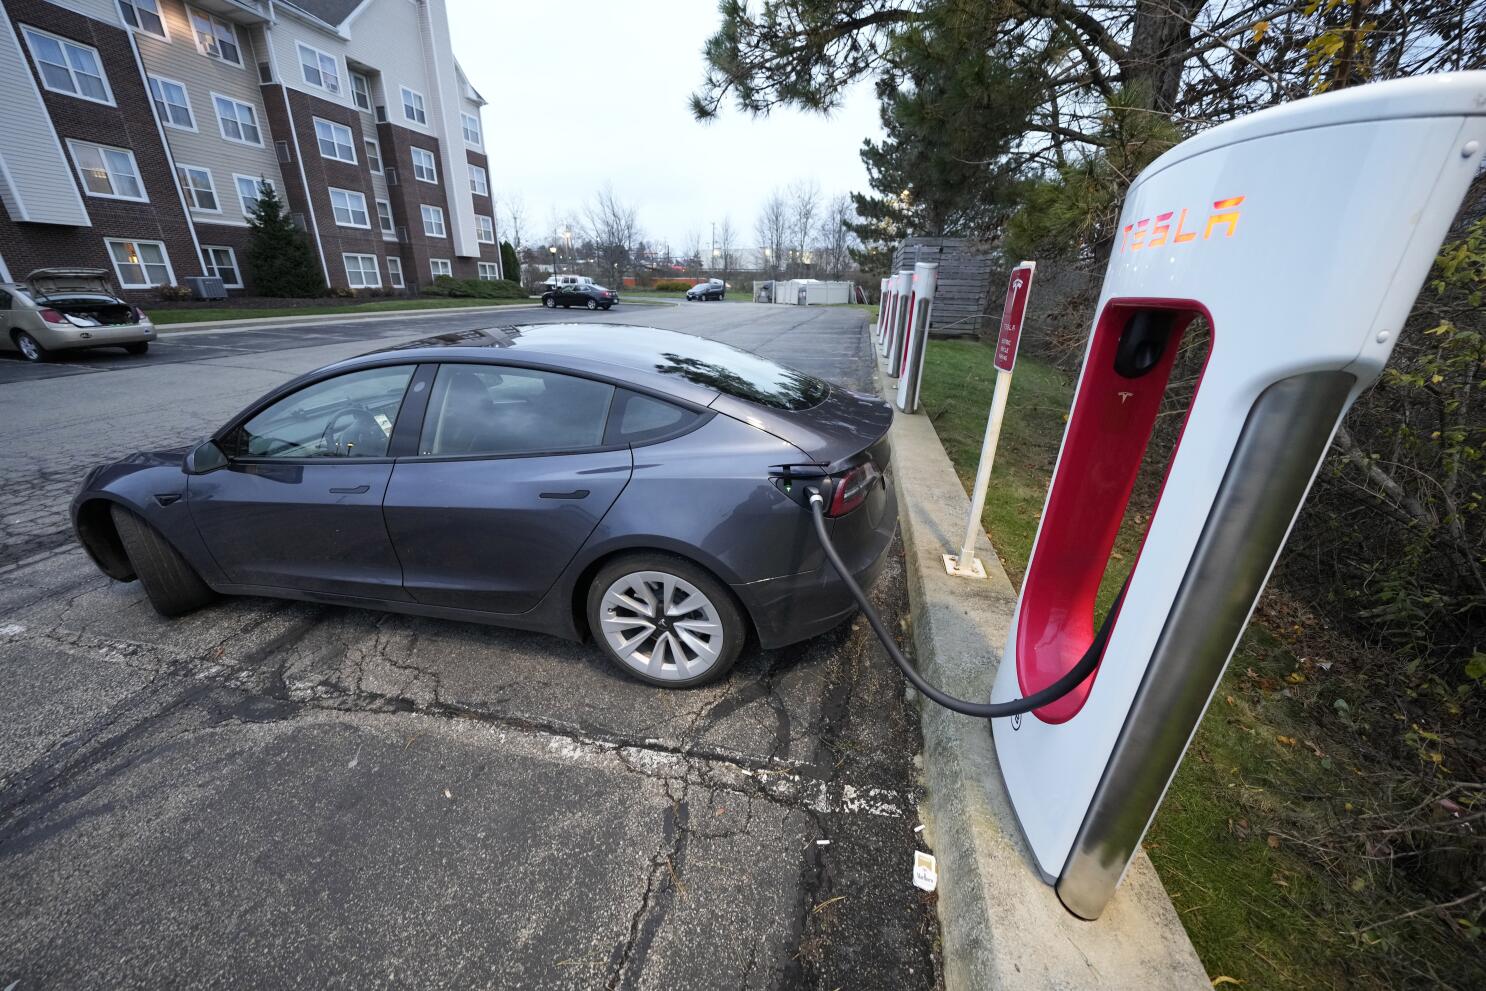 Tesla baja el precio de vehículos para impulsar demanda - Los Angeles Times